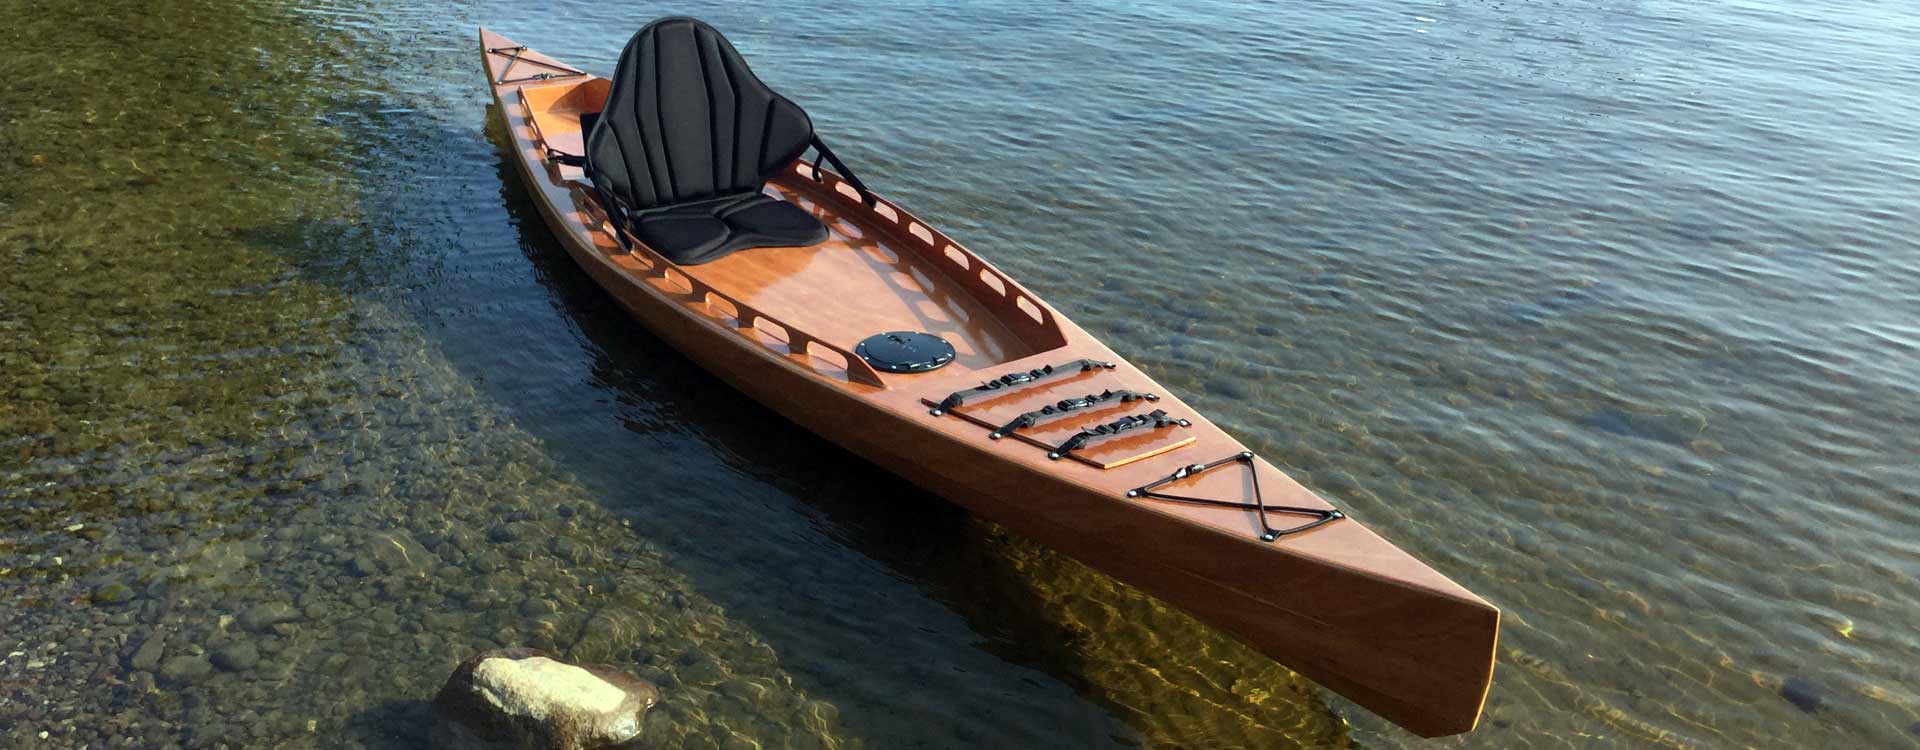 f1430 sit on top kayak bedard yacht design